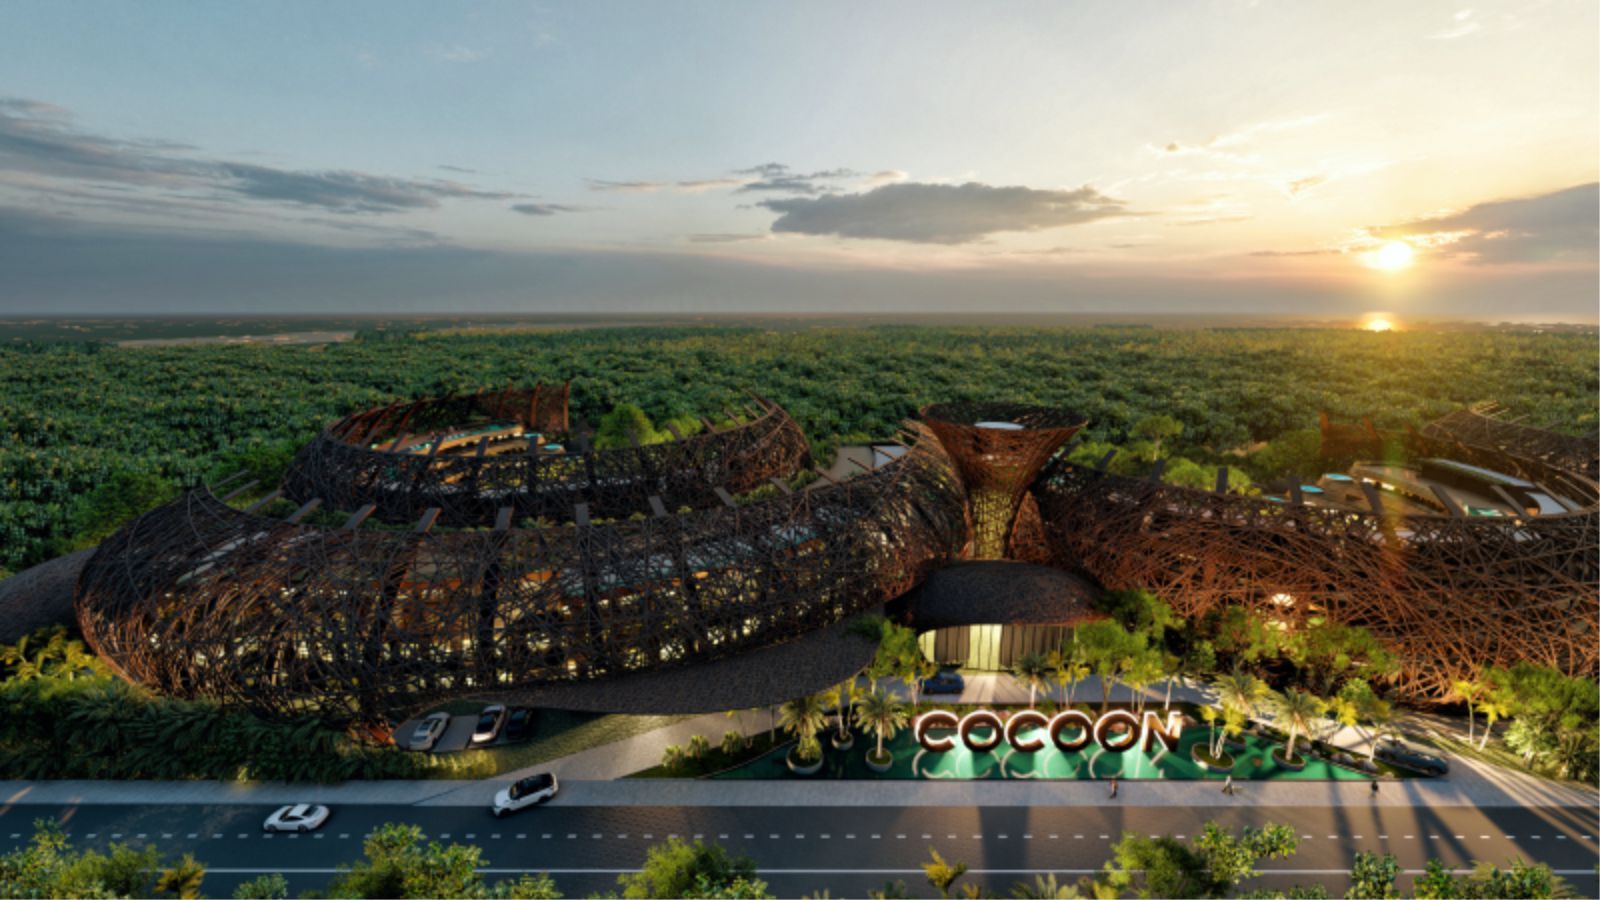 Cocoon Hotel & Resort